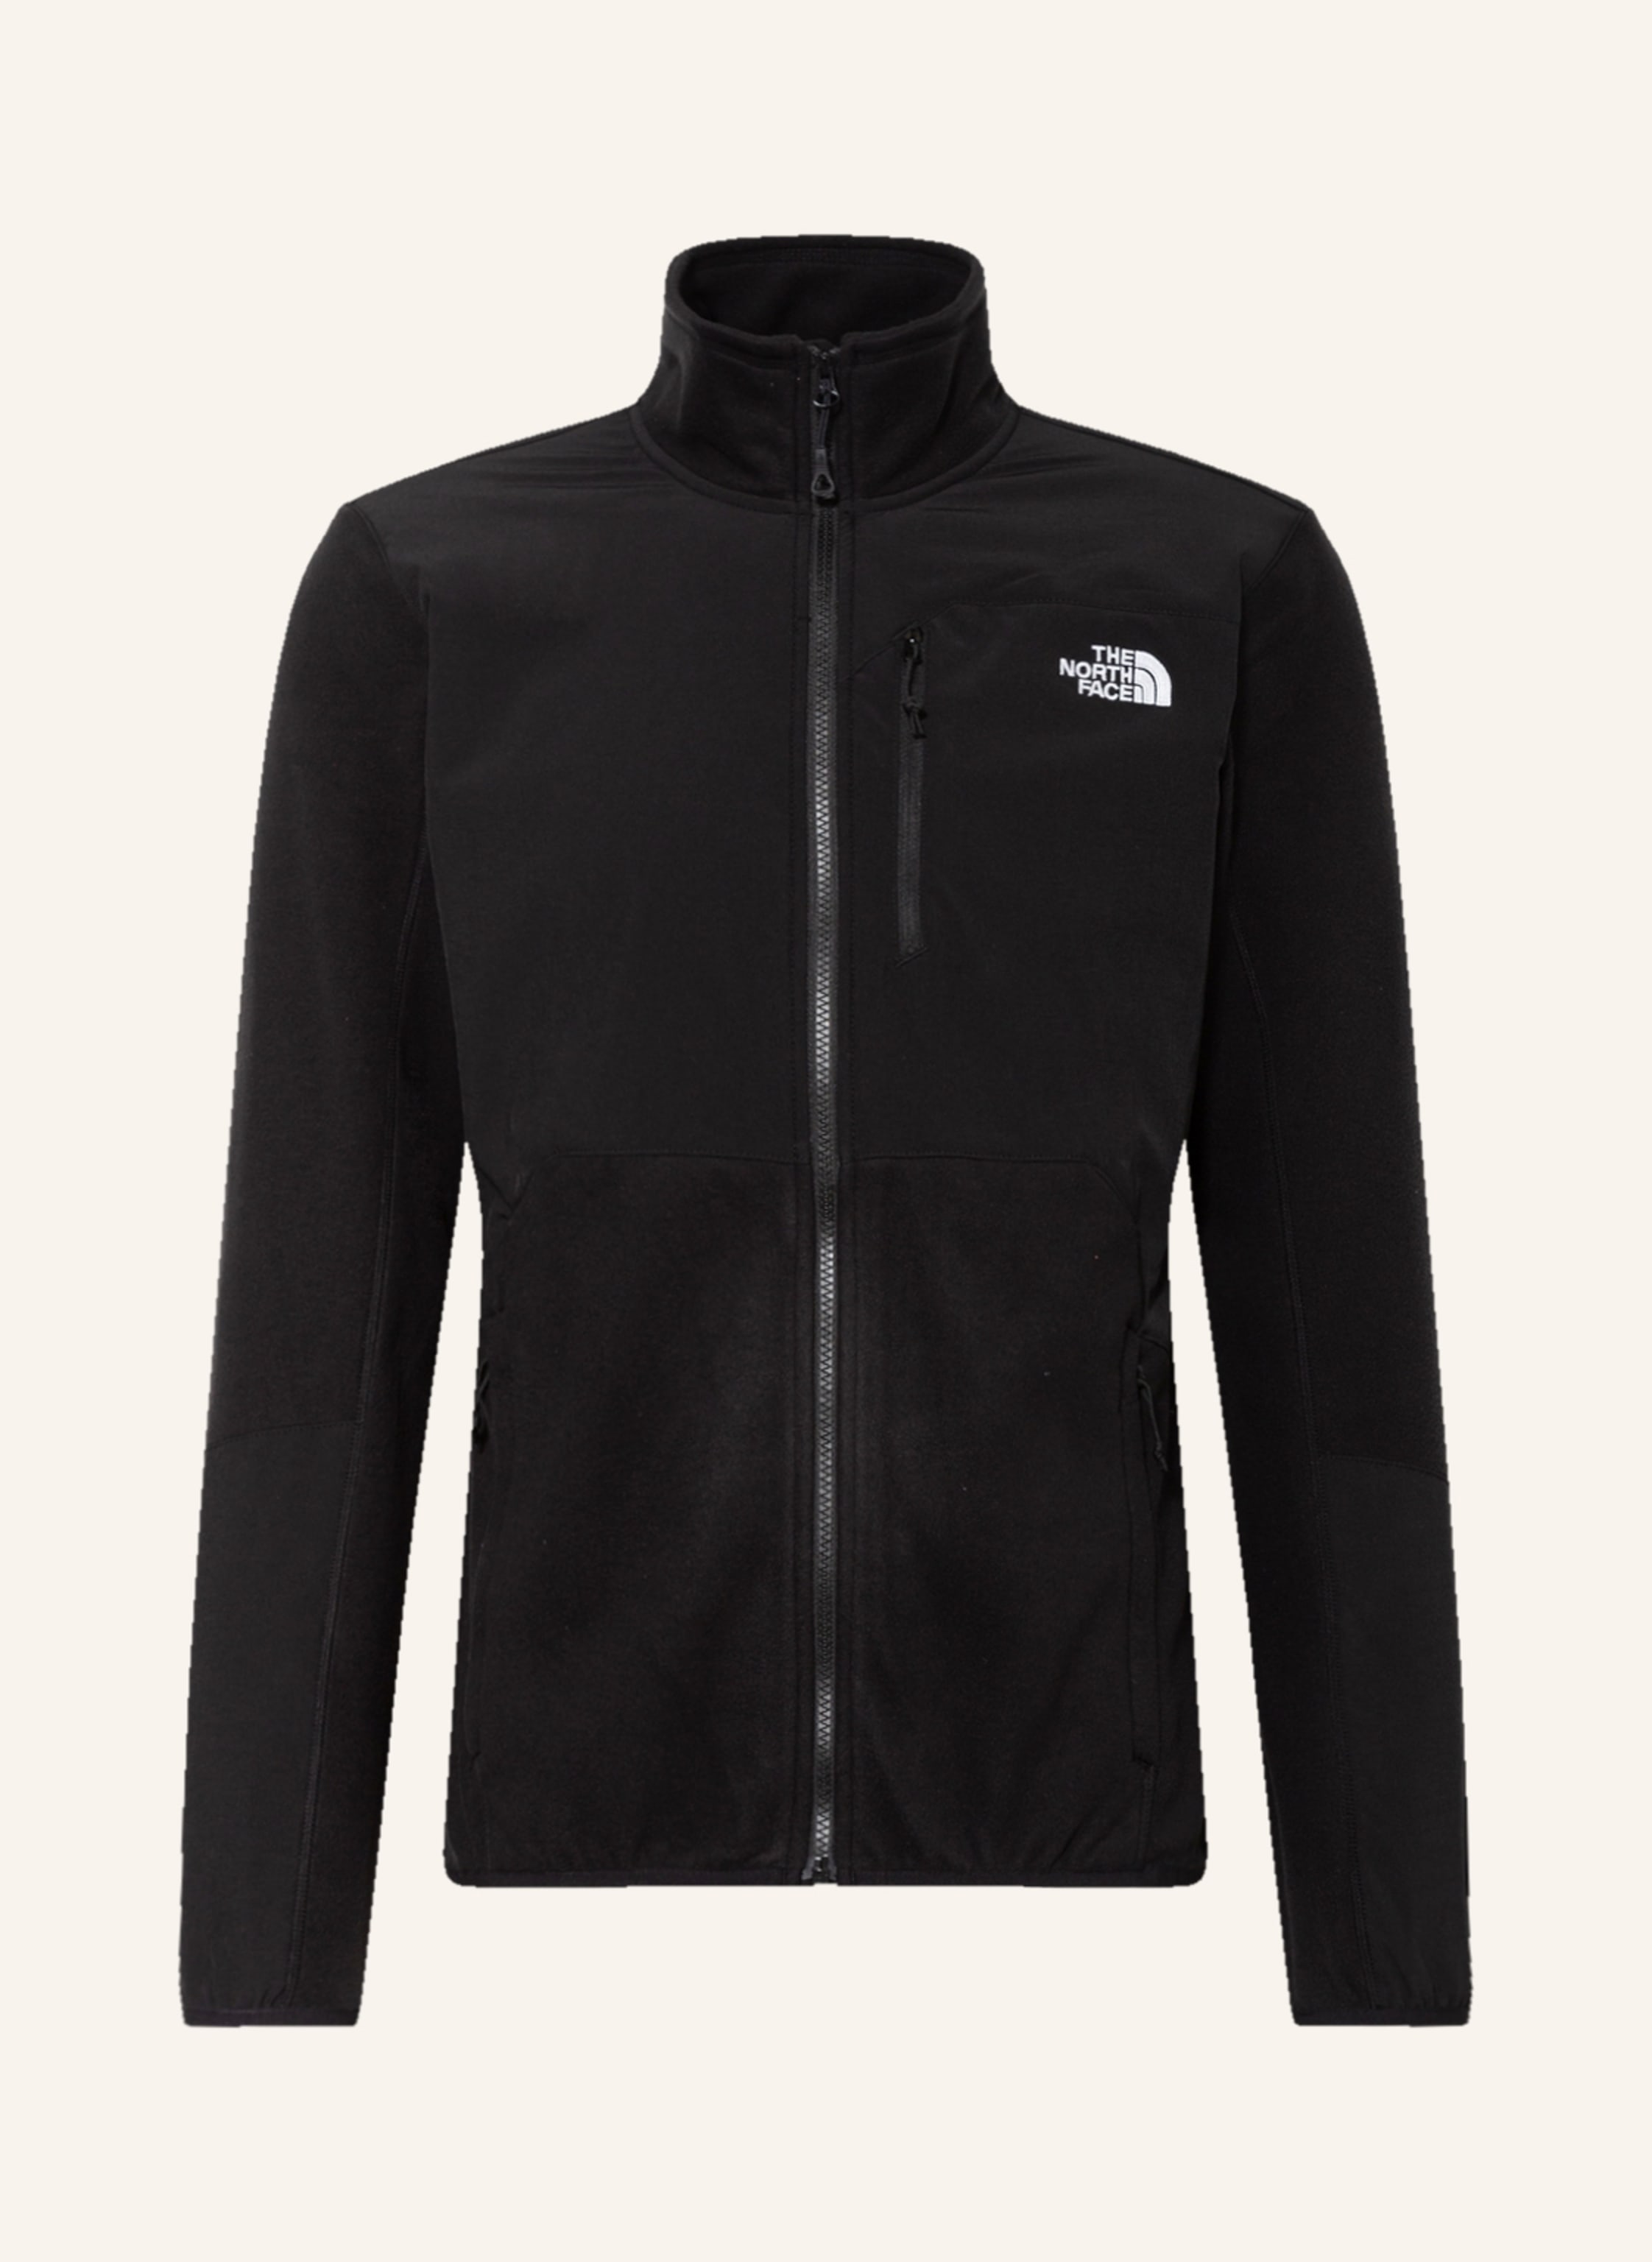 THE NORTH FACE Hybrid quilted jacket GLACIER PRO in black | Breuninger